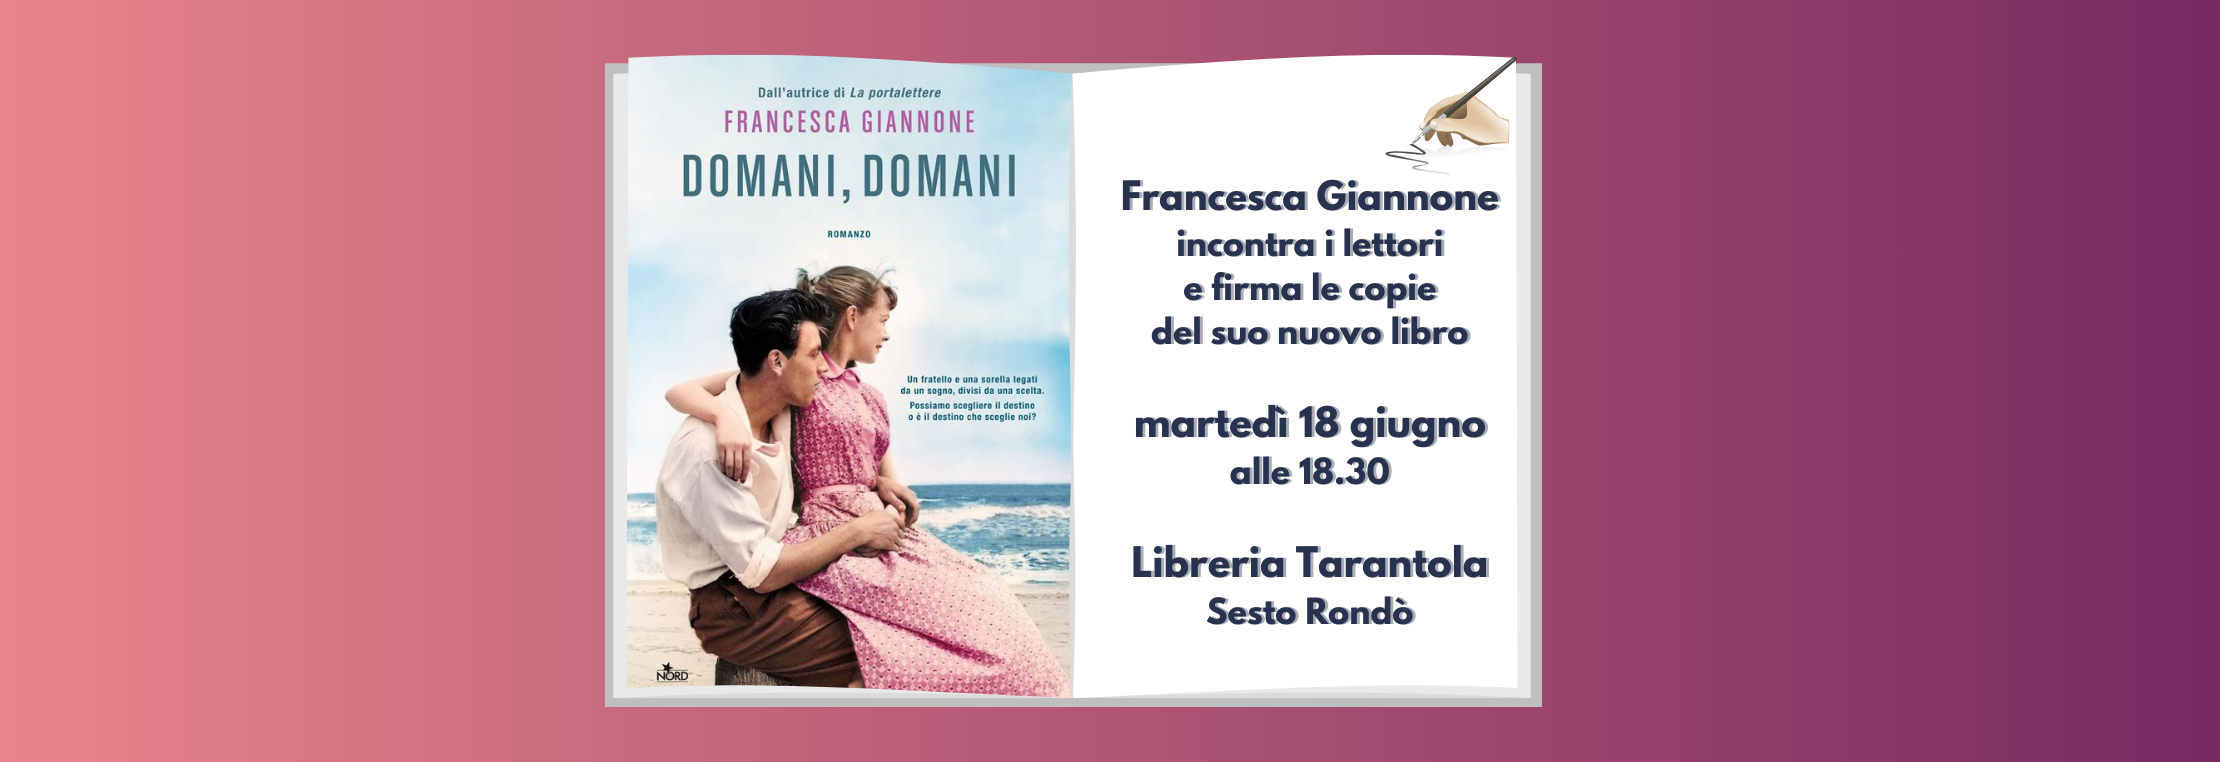 Francesca Giannone incontra i lettori alla libreria Tarantola